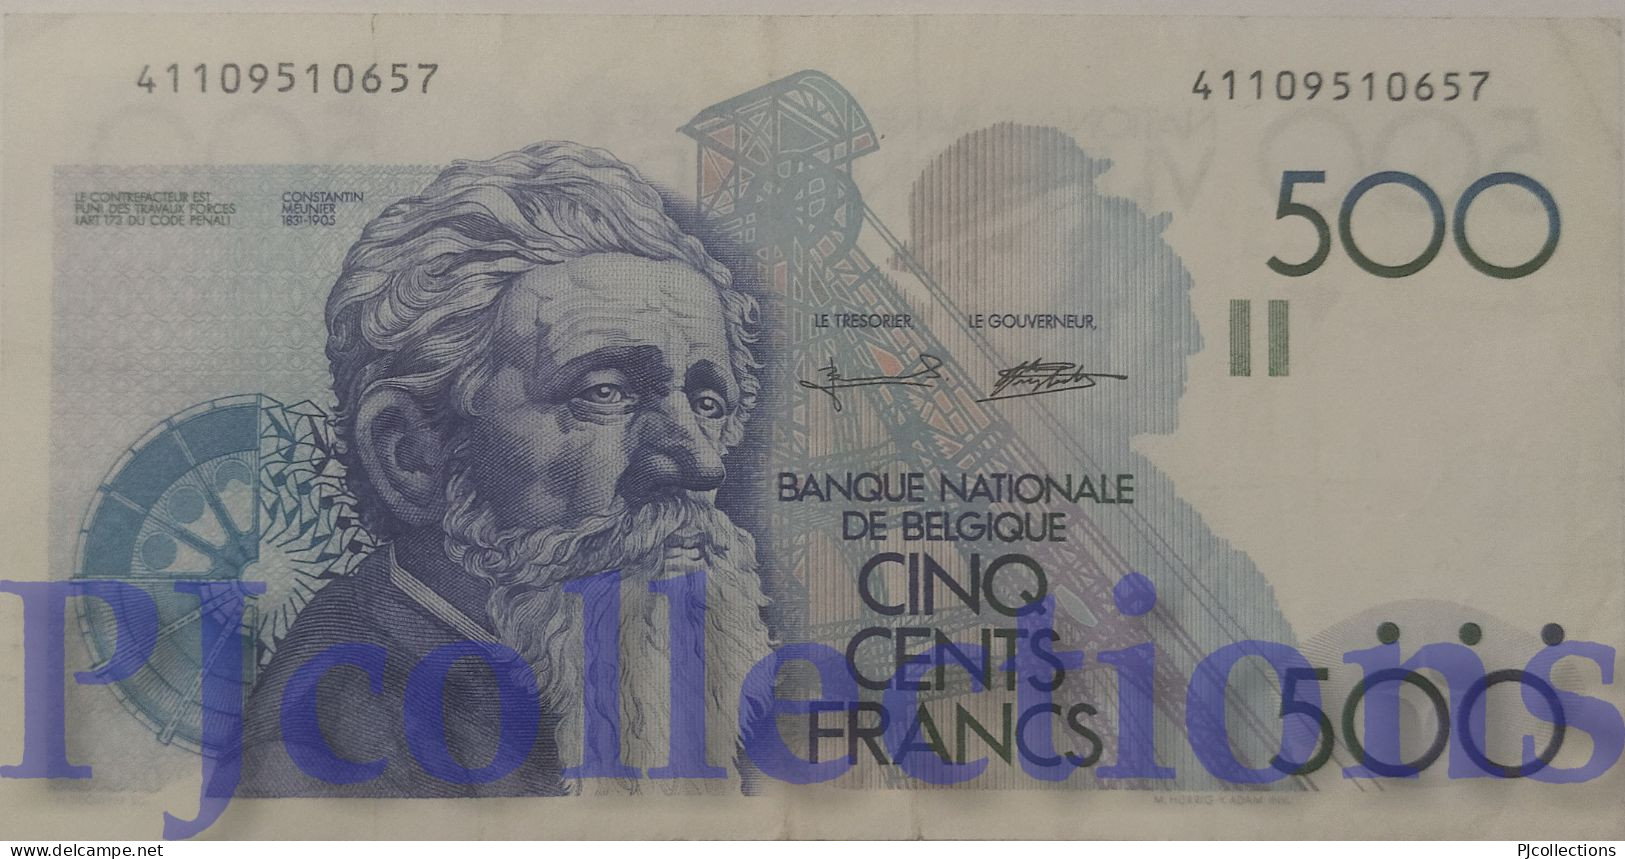 BELGIO - BELGIUM 500 FRANCS 1980/81 PICK 141 VF+ - 500 Francs